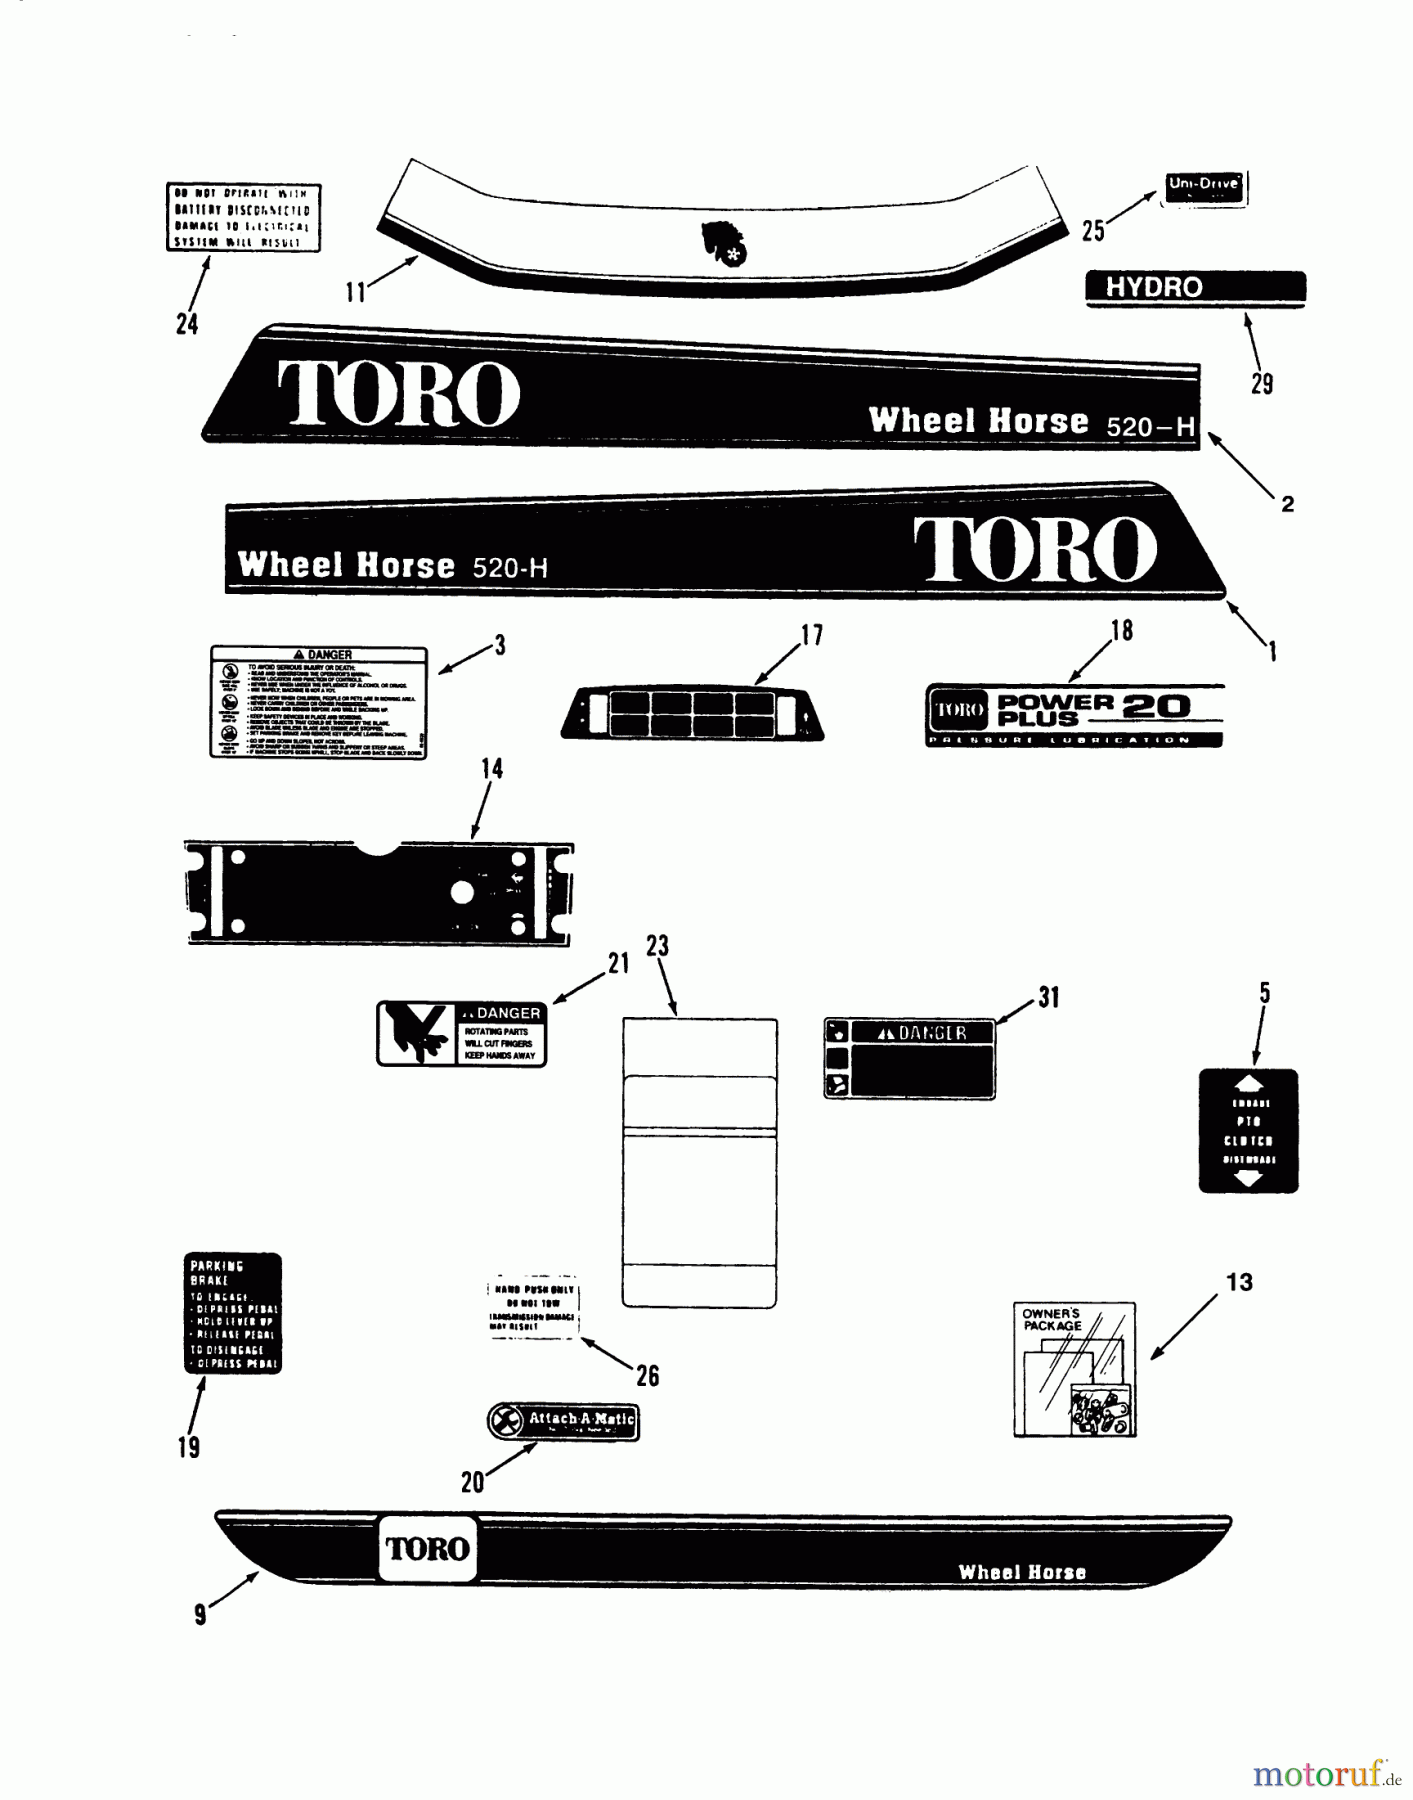  Toro Neu Mowers, Lawn & Garden Tractor Seite 1 73520 (520-H) - Toro 520-H Garden Tractor, 1993 (39000001-39999999) DECALS